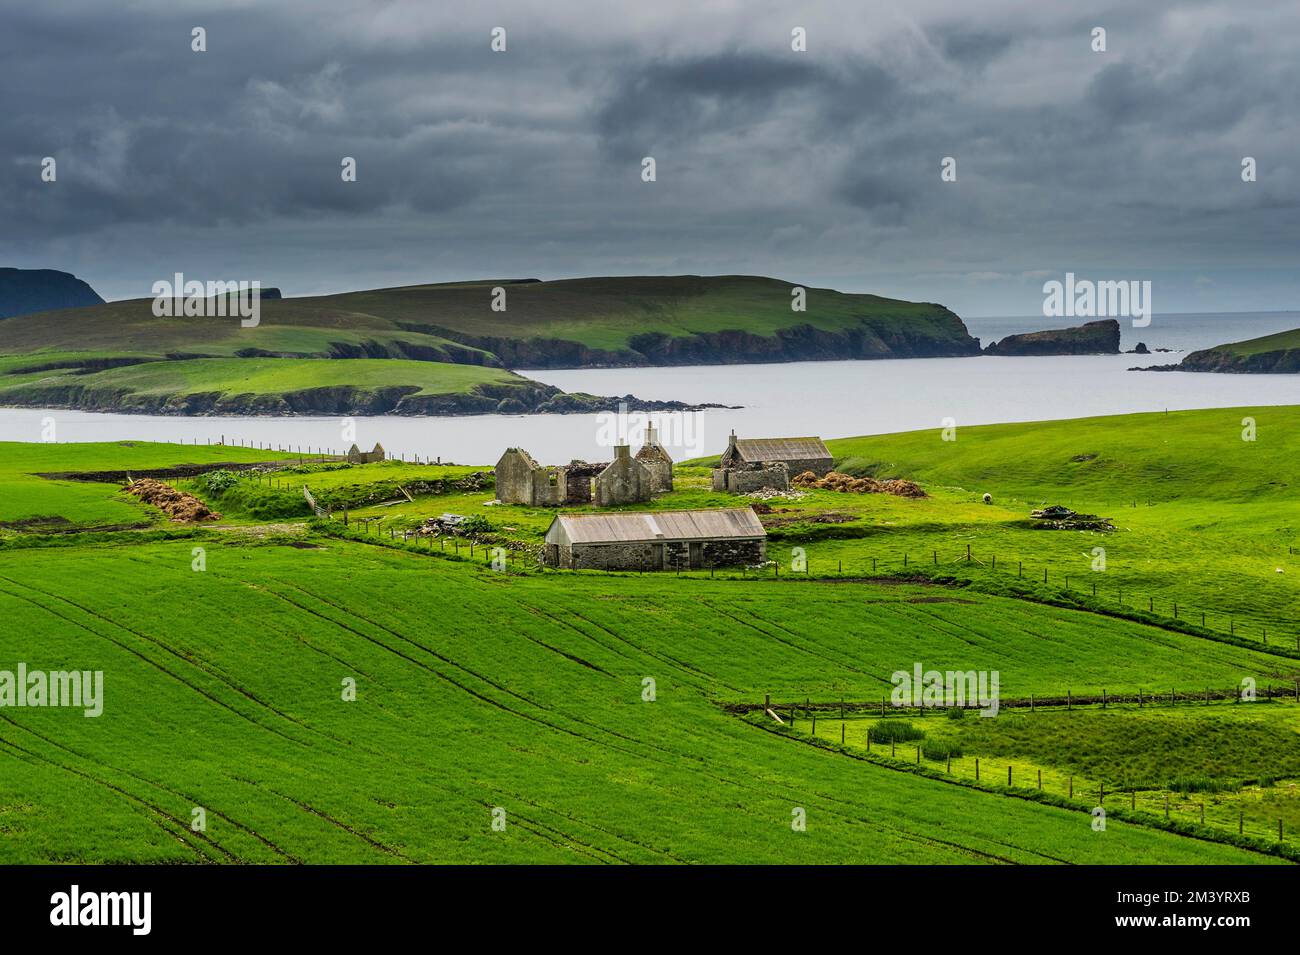 Ferme d'Abandonded, îles Shetland, Royaume-Uni Banque D'Images